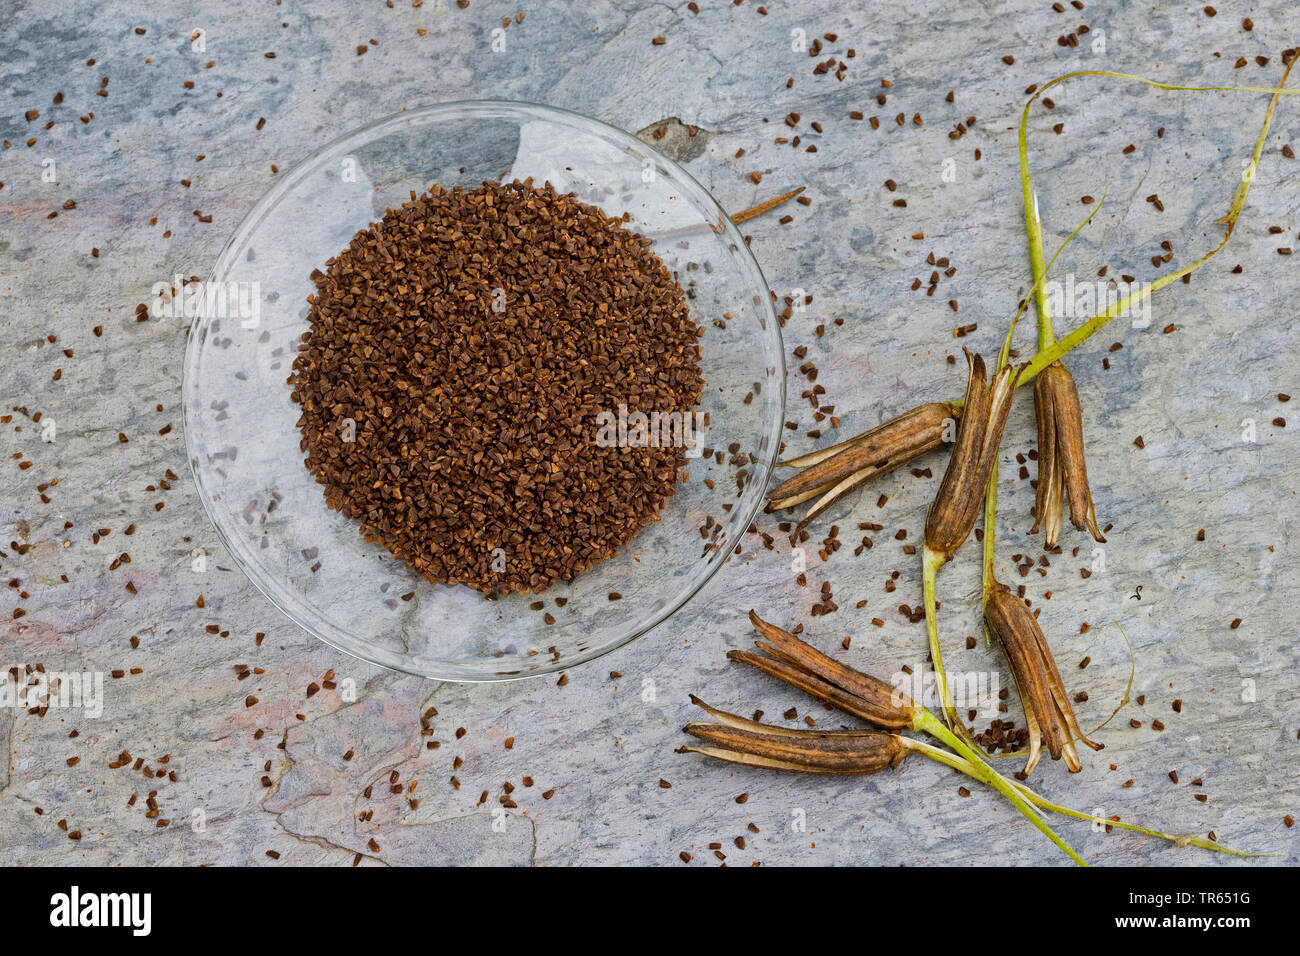 Gemeinsame Nachtkerze (Oenothera biennis) Samen in eine Schüssel, Produktion einer Nachtkerzenöl, Deutschland Stockfoto